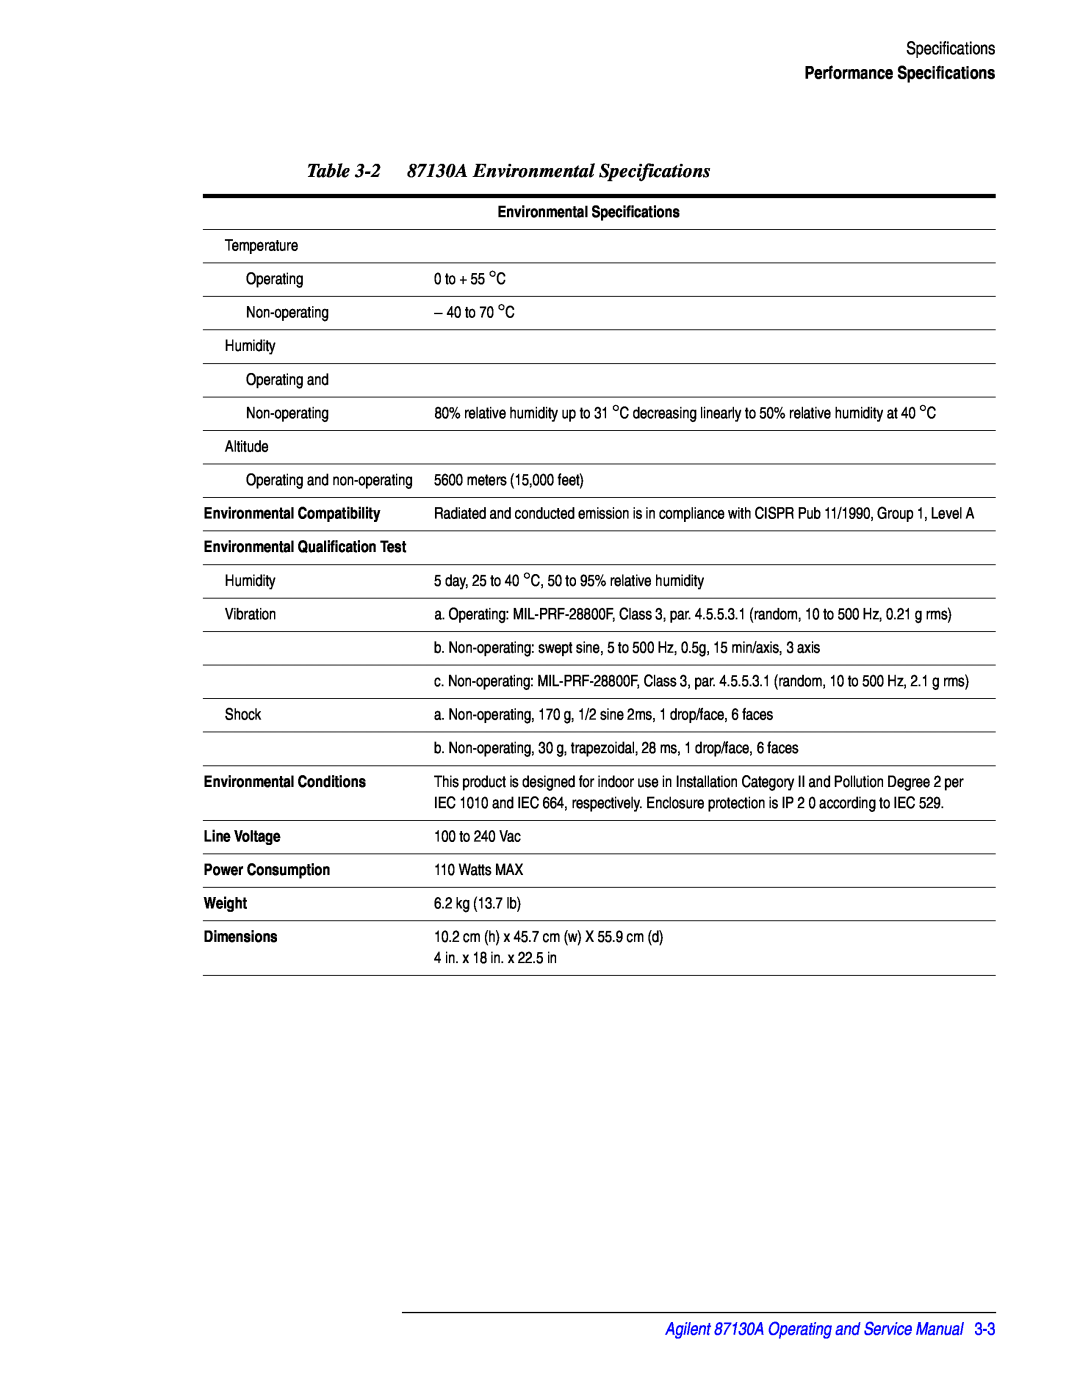 Agilent Technologies 87130A Environmental Specifications, Performance Specifications, Environmental Conditions, Weight 